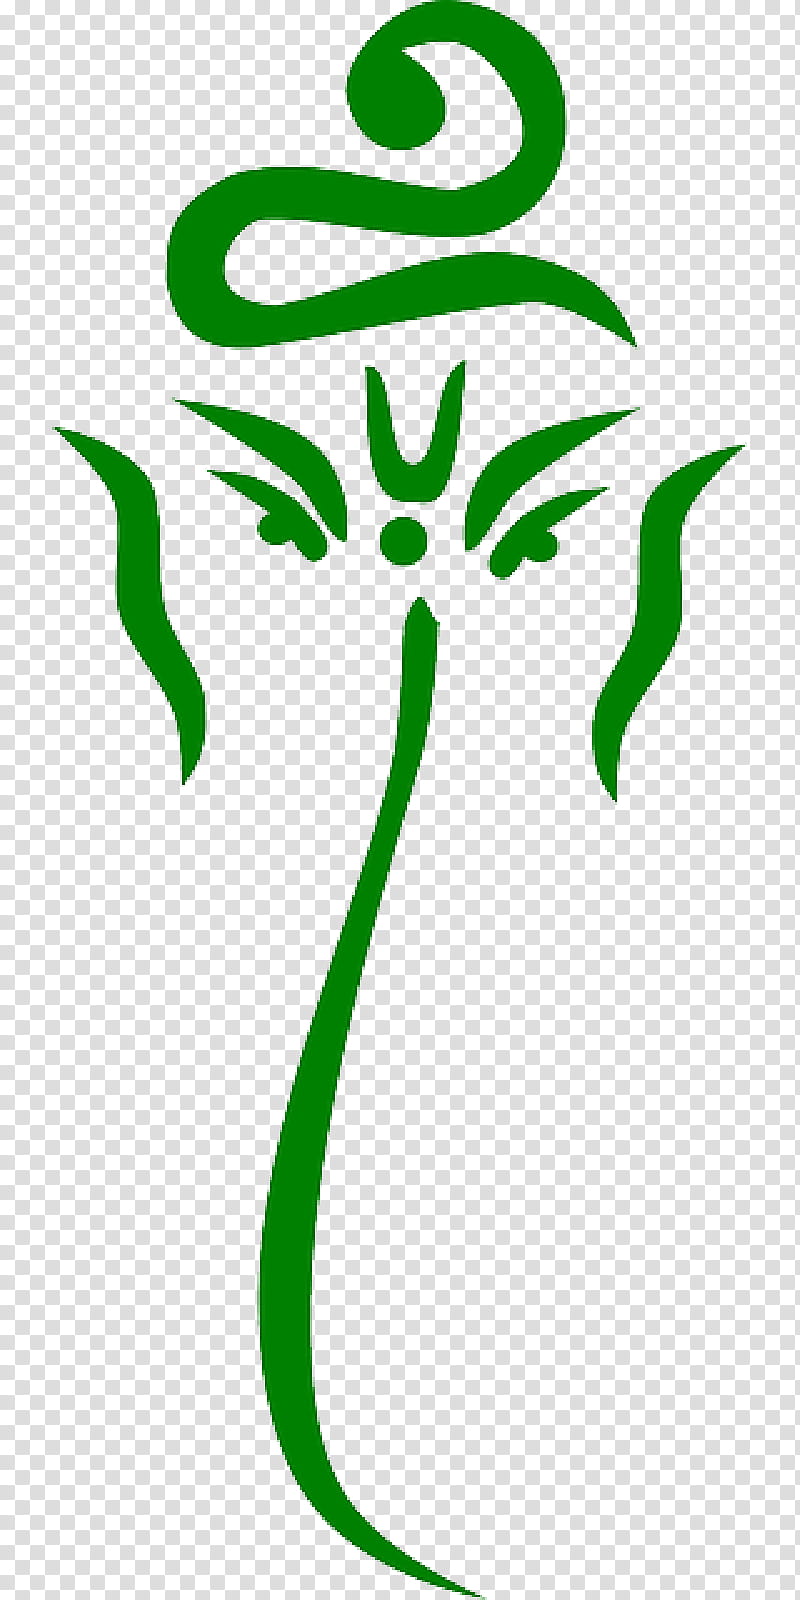 Green Leaf Logo, Ganesha, God, Indian Art, Deity, Document, Hinduism, Blog transparent background PNG clipart